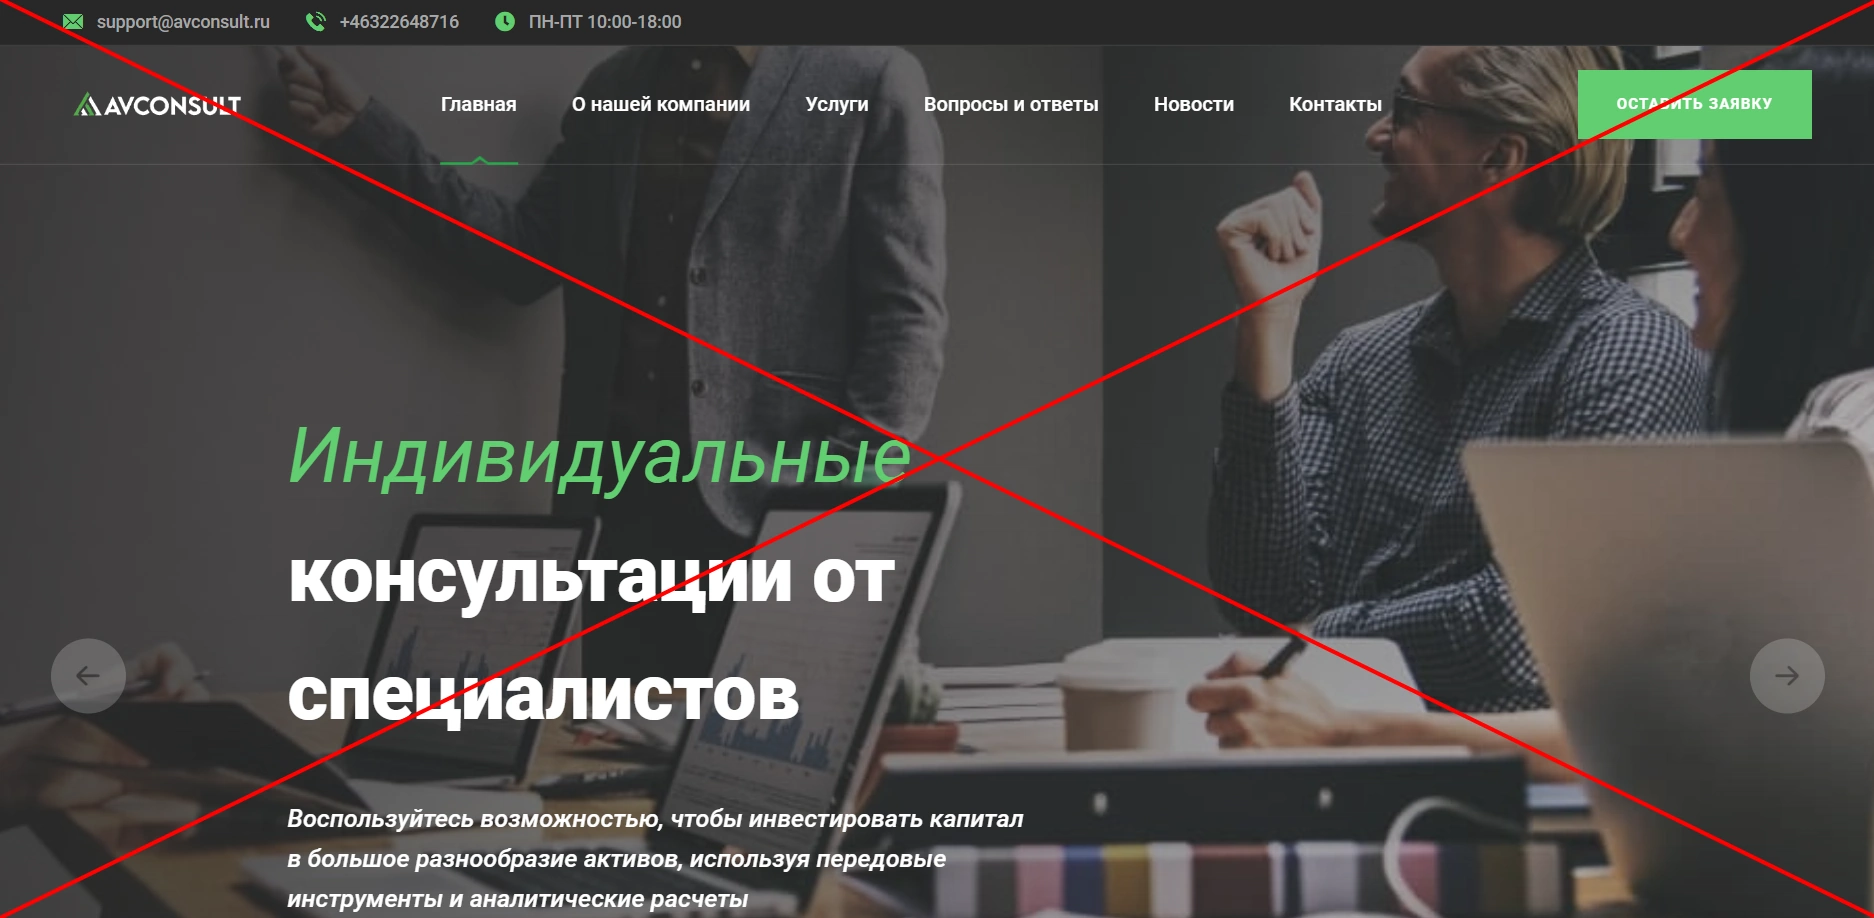 AV Consult - отзывы клиентов о компании avconsult.ru